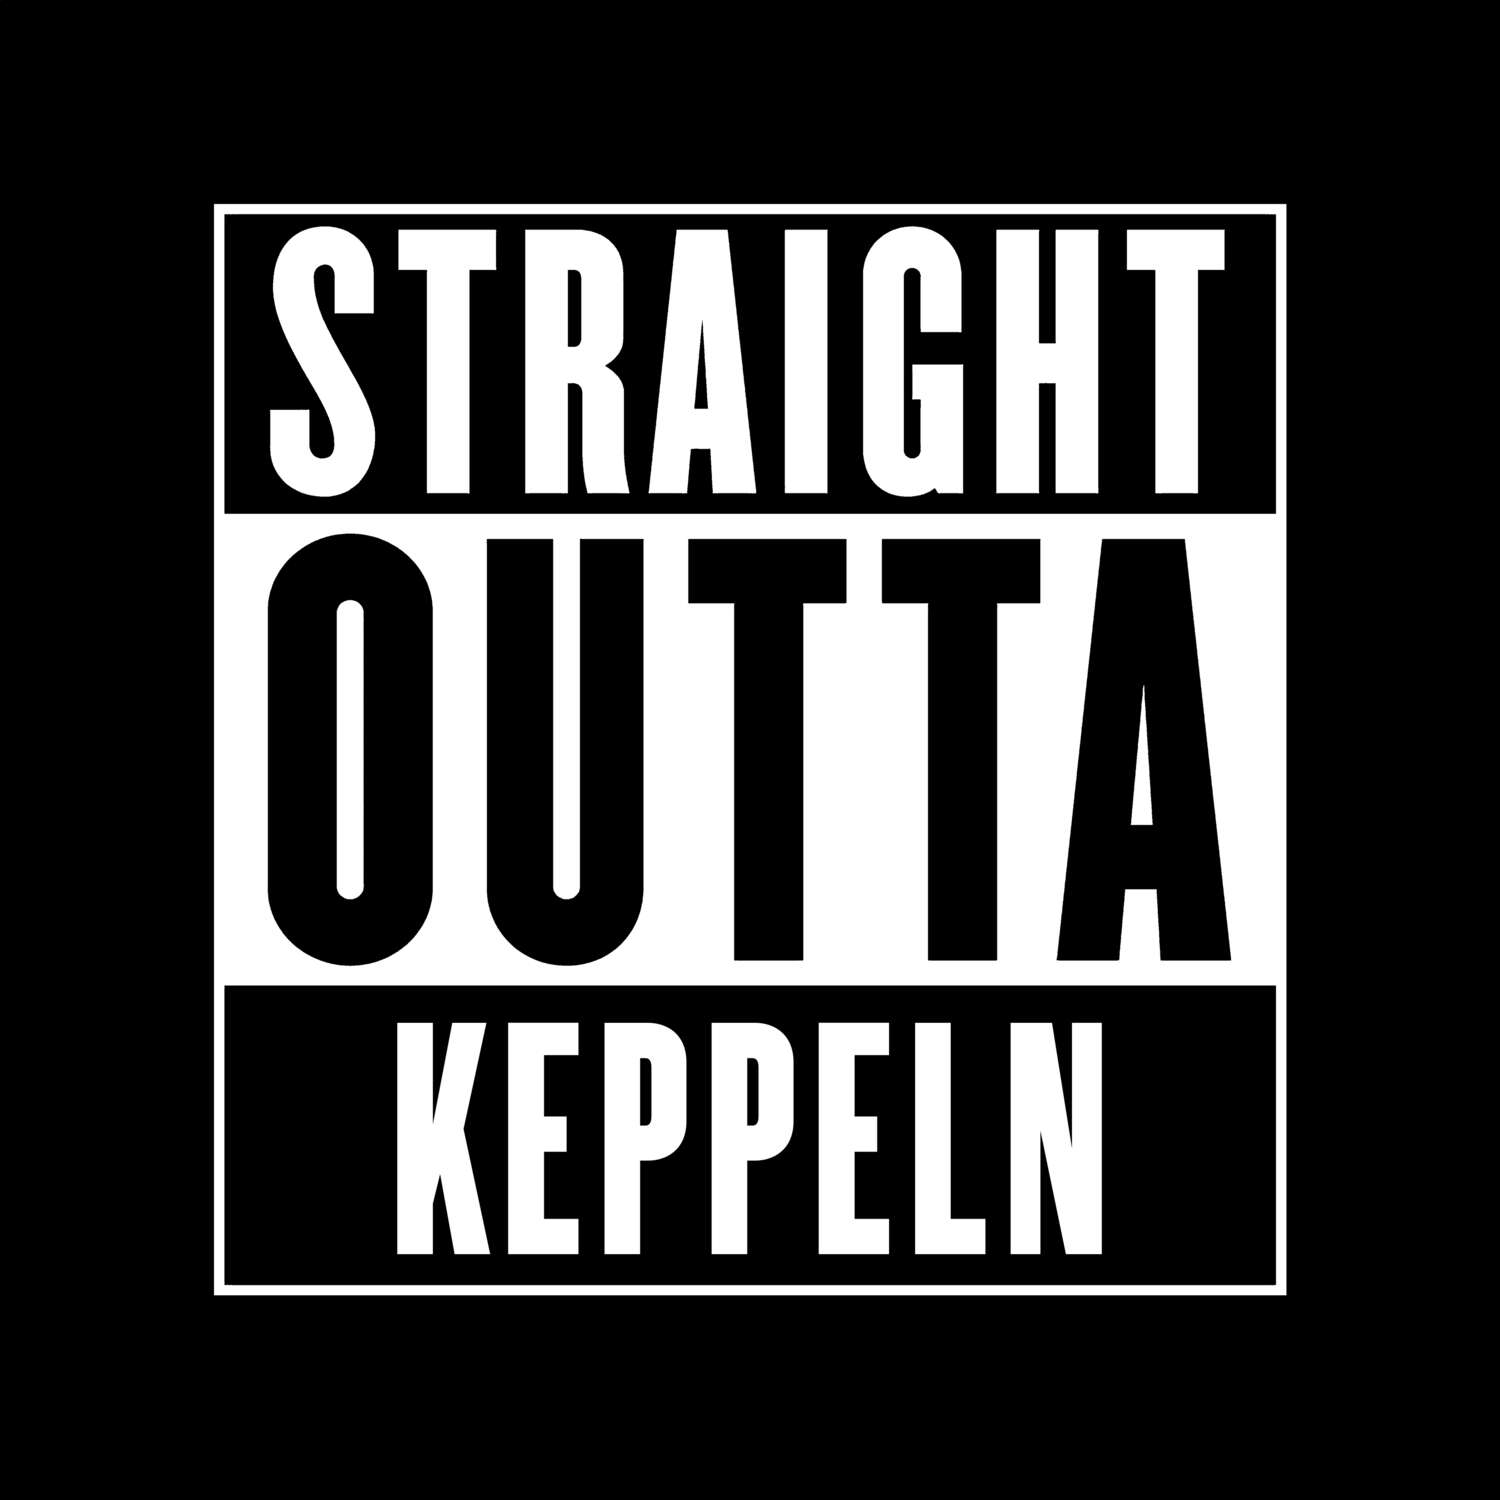 Keppeln T-Shirt »Straight Outta«